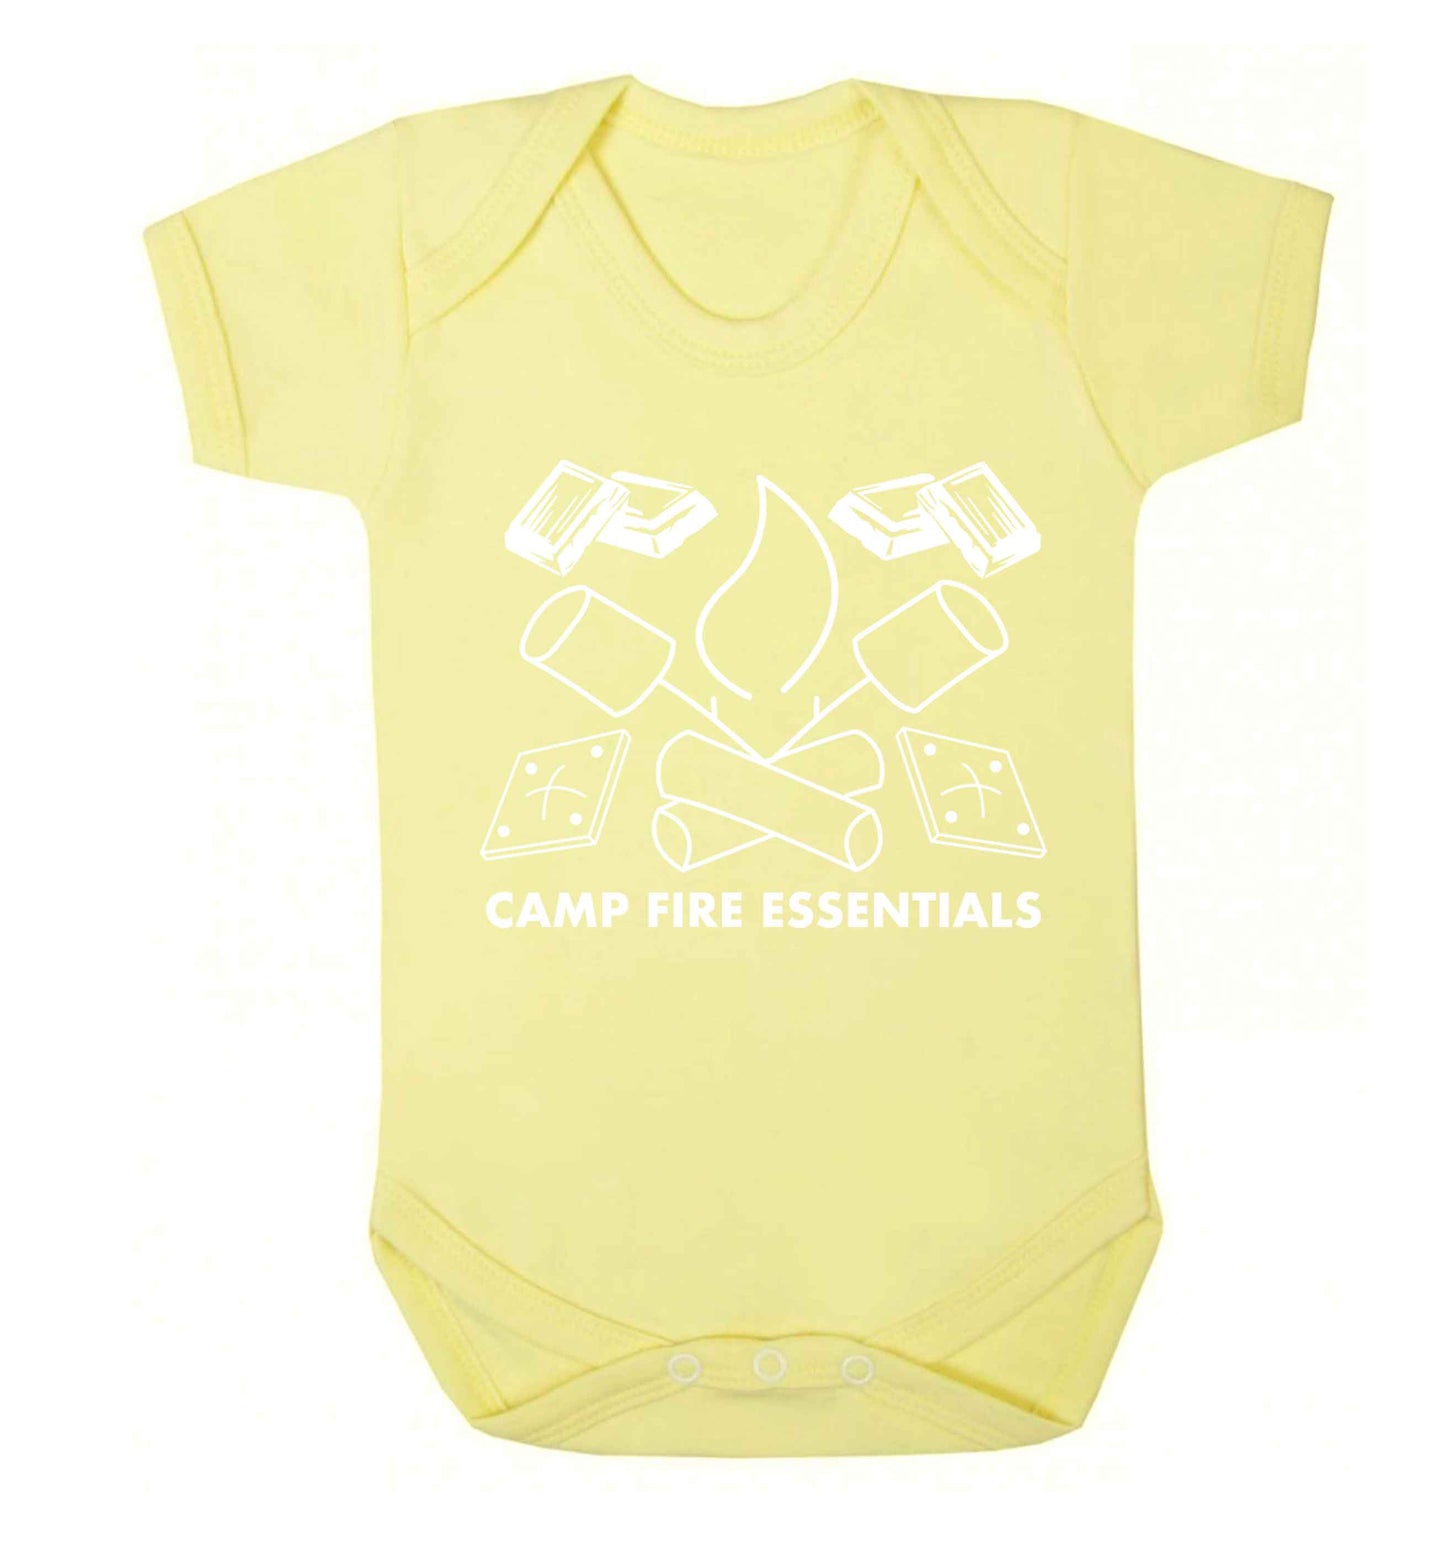 Campfire essentials Baby Vest pale yellow 18-24 months